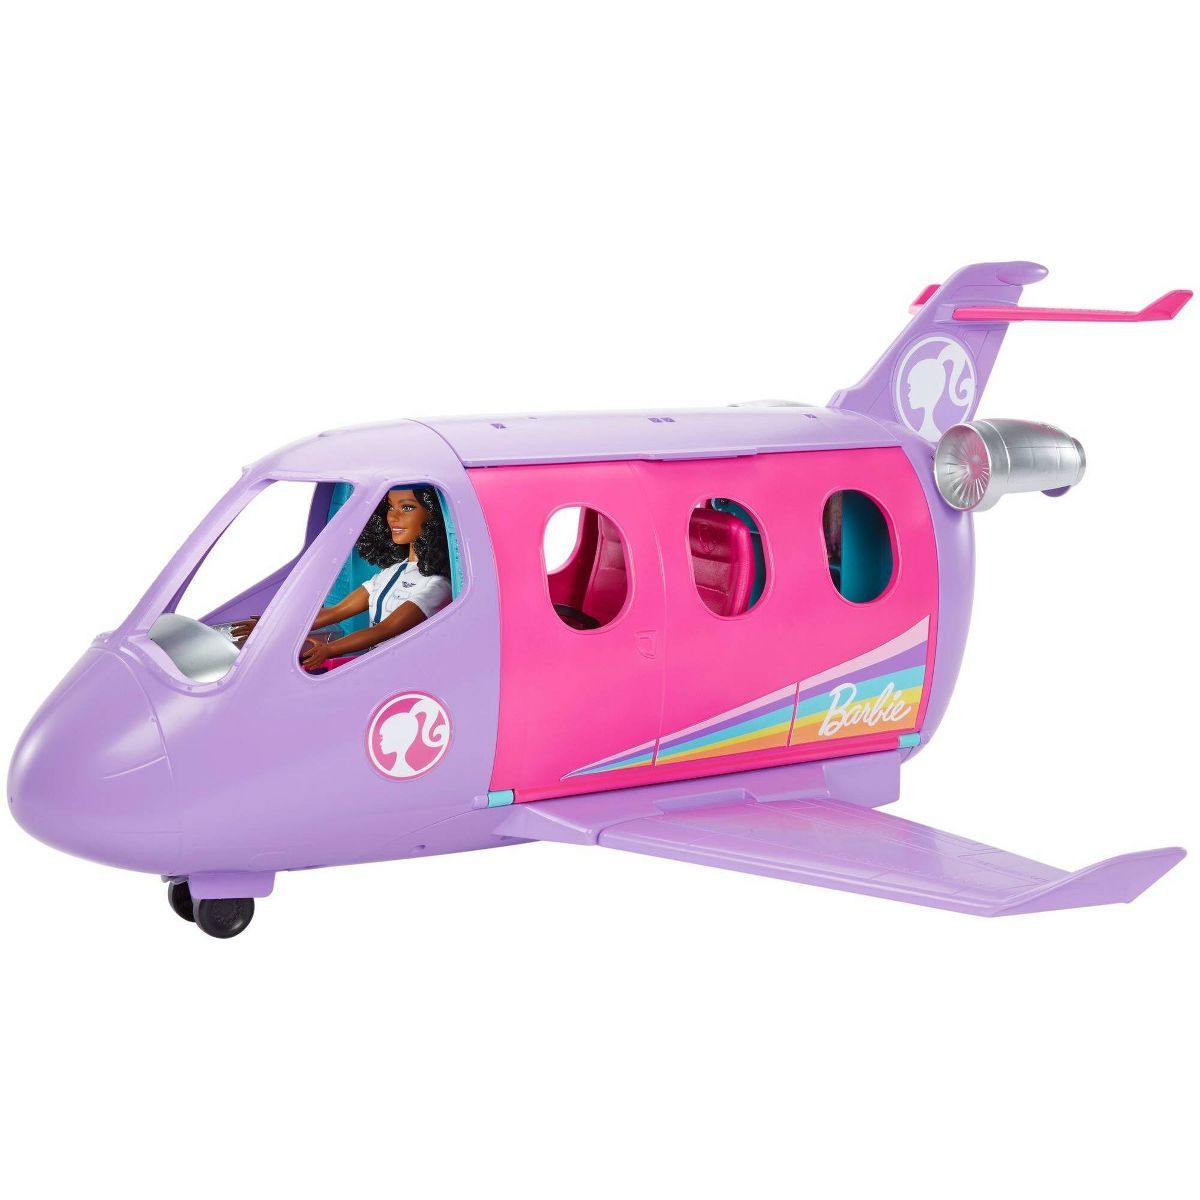 Barbie Airplane Adventures Playset | Target